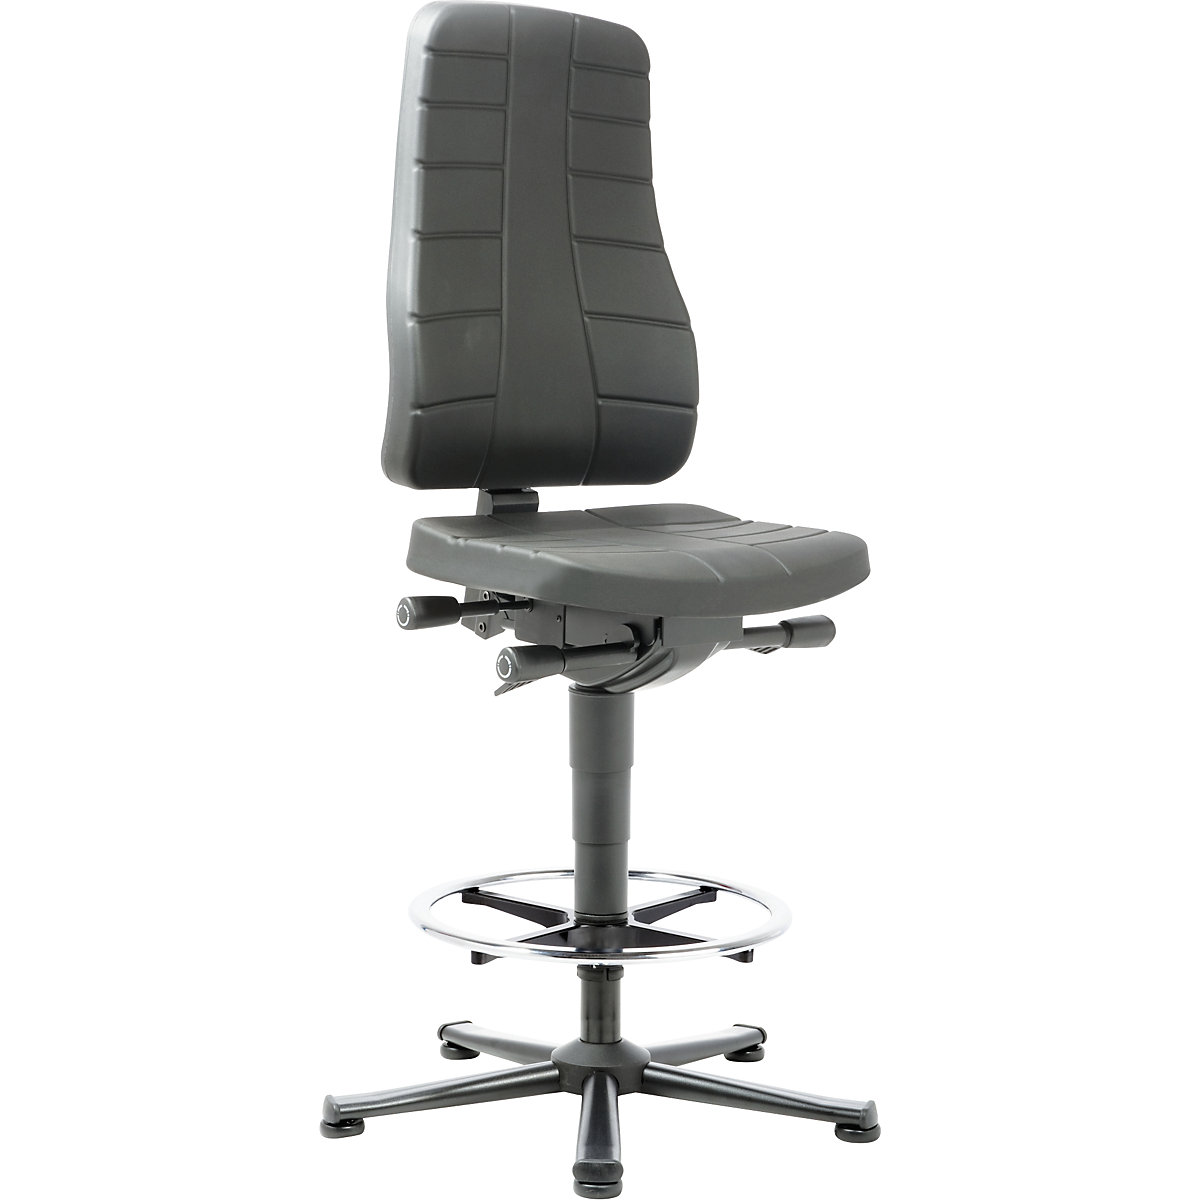 Pracovní otočná židle All-in-One – bimos